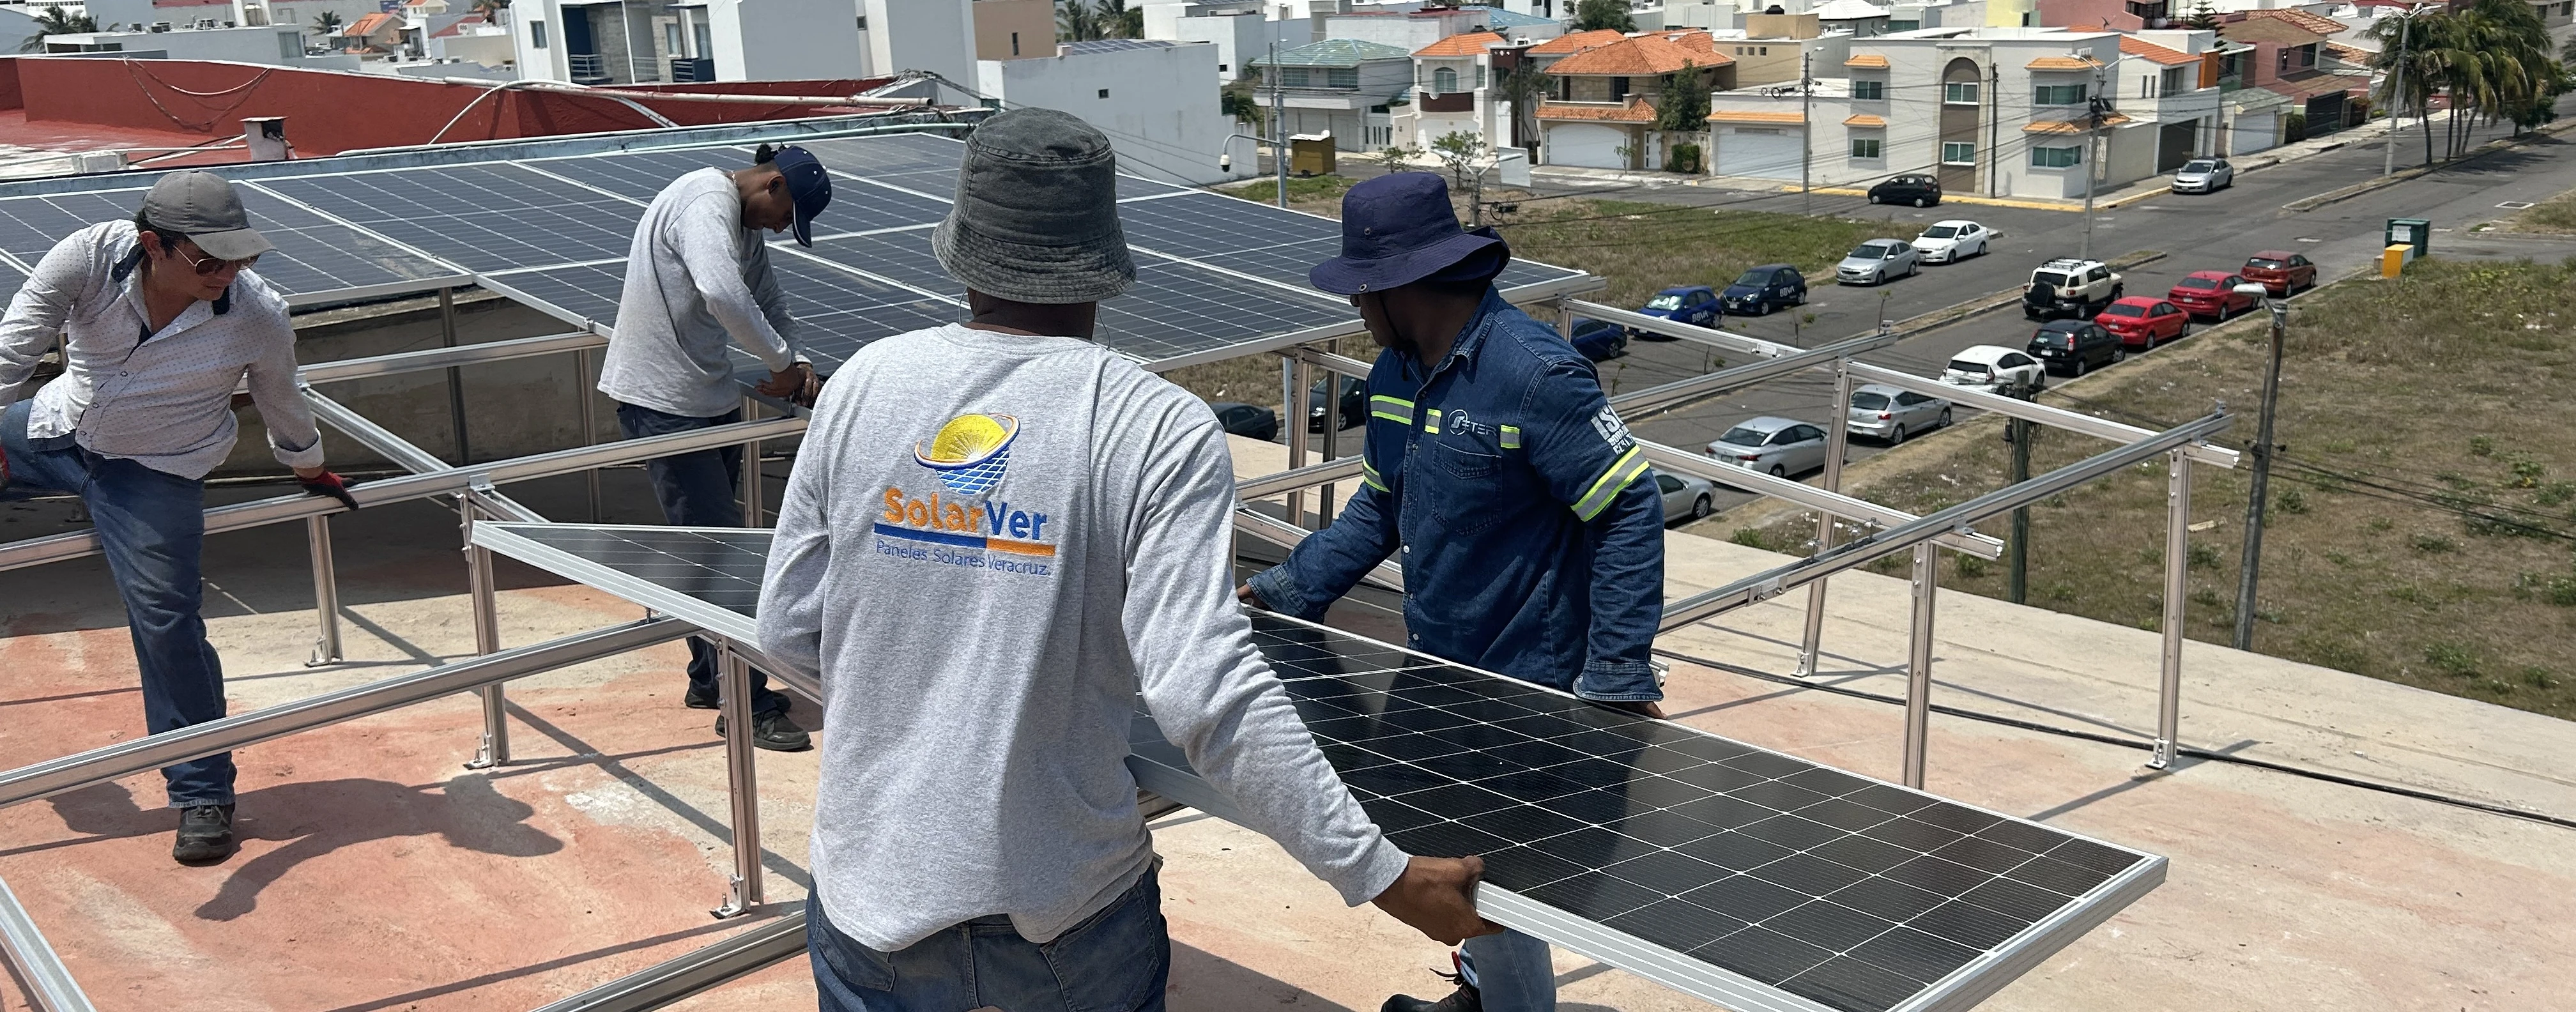 Trabajadores instalando un sistema de paneles solares en un techo